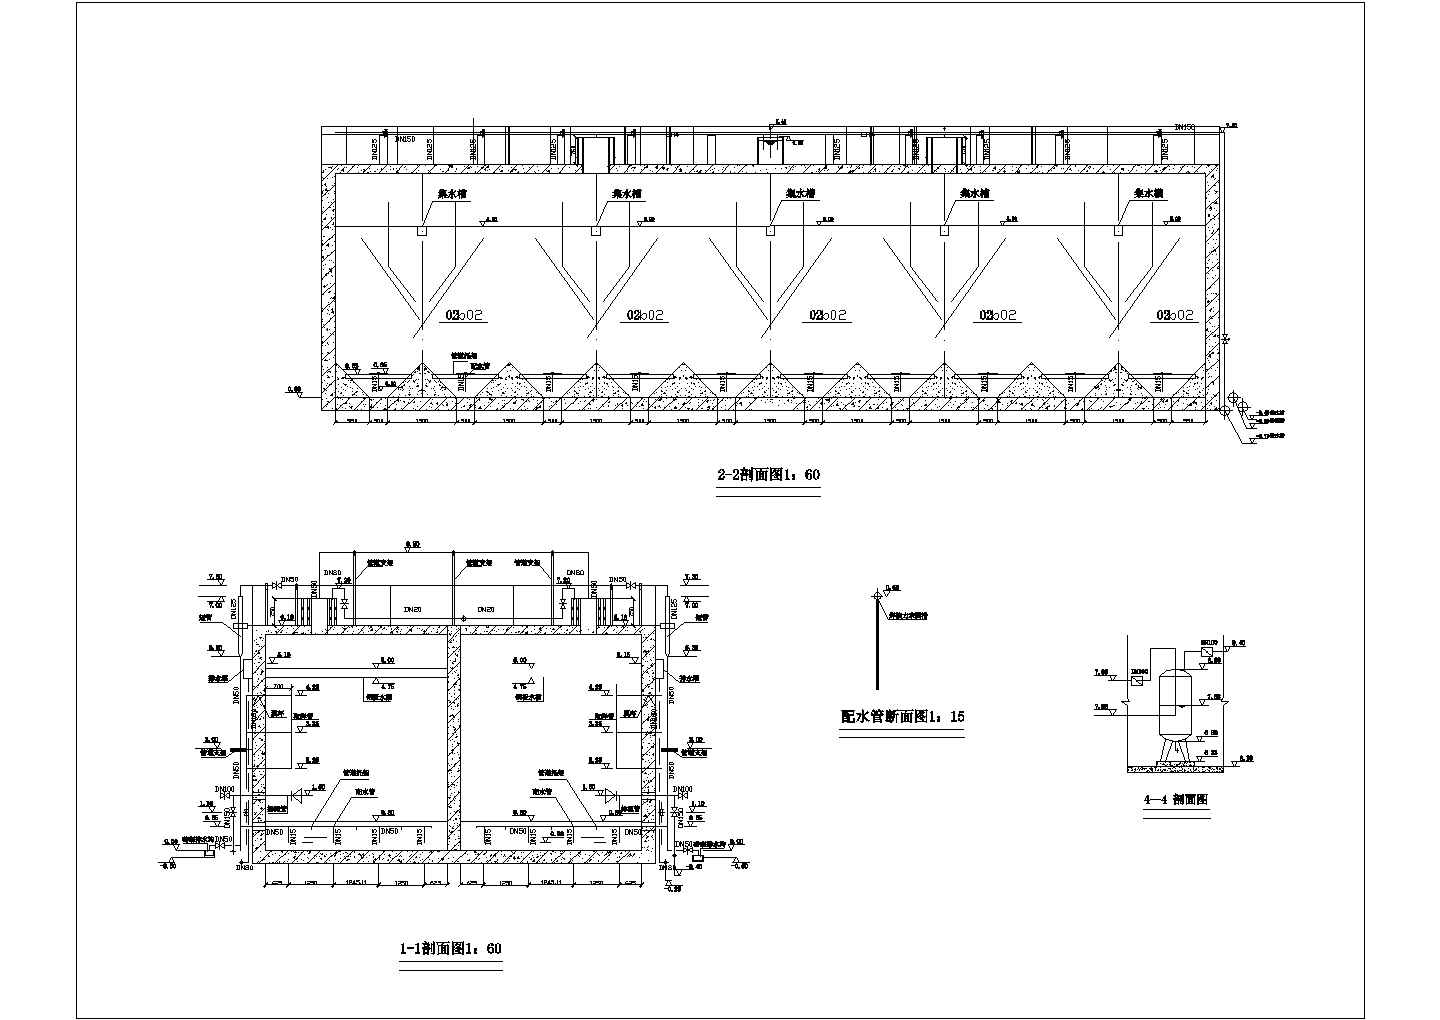 安徽某工程UASB池CAD环保设计剖面图及平面图